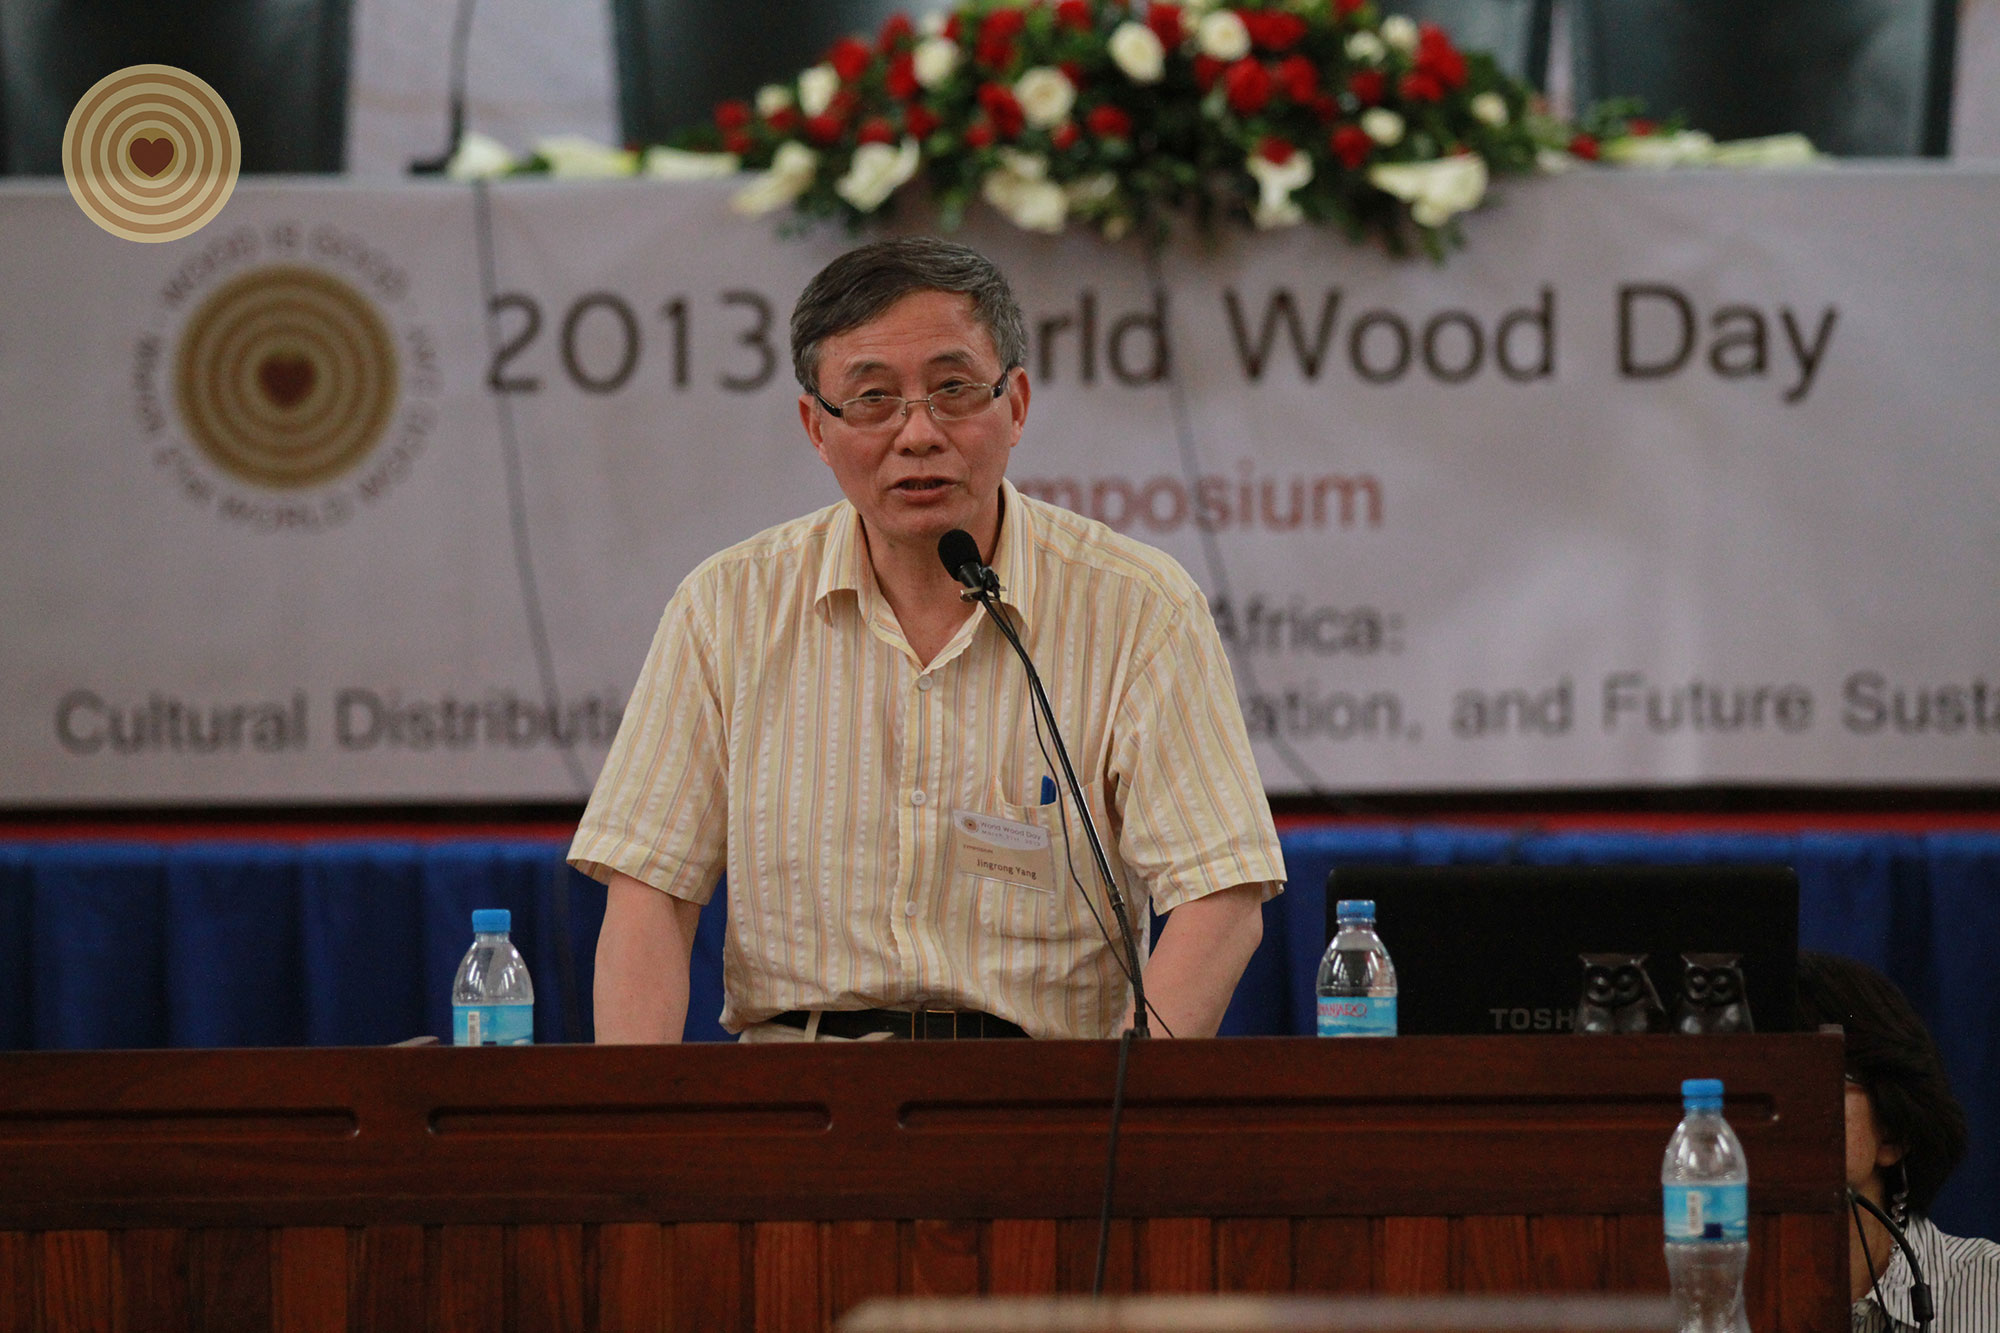 2013 World Wood Day, symposium